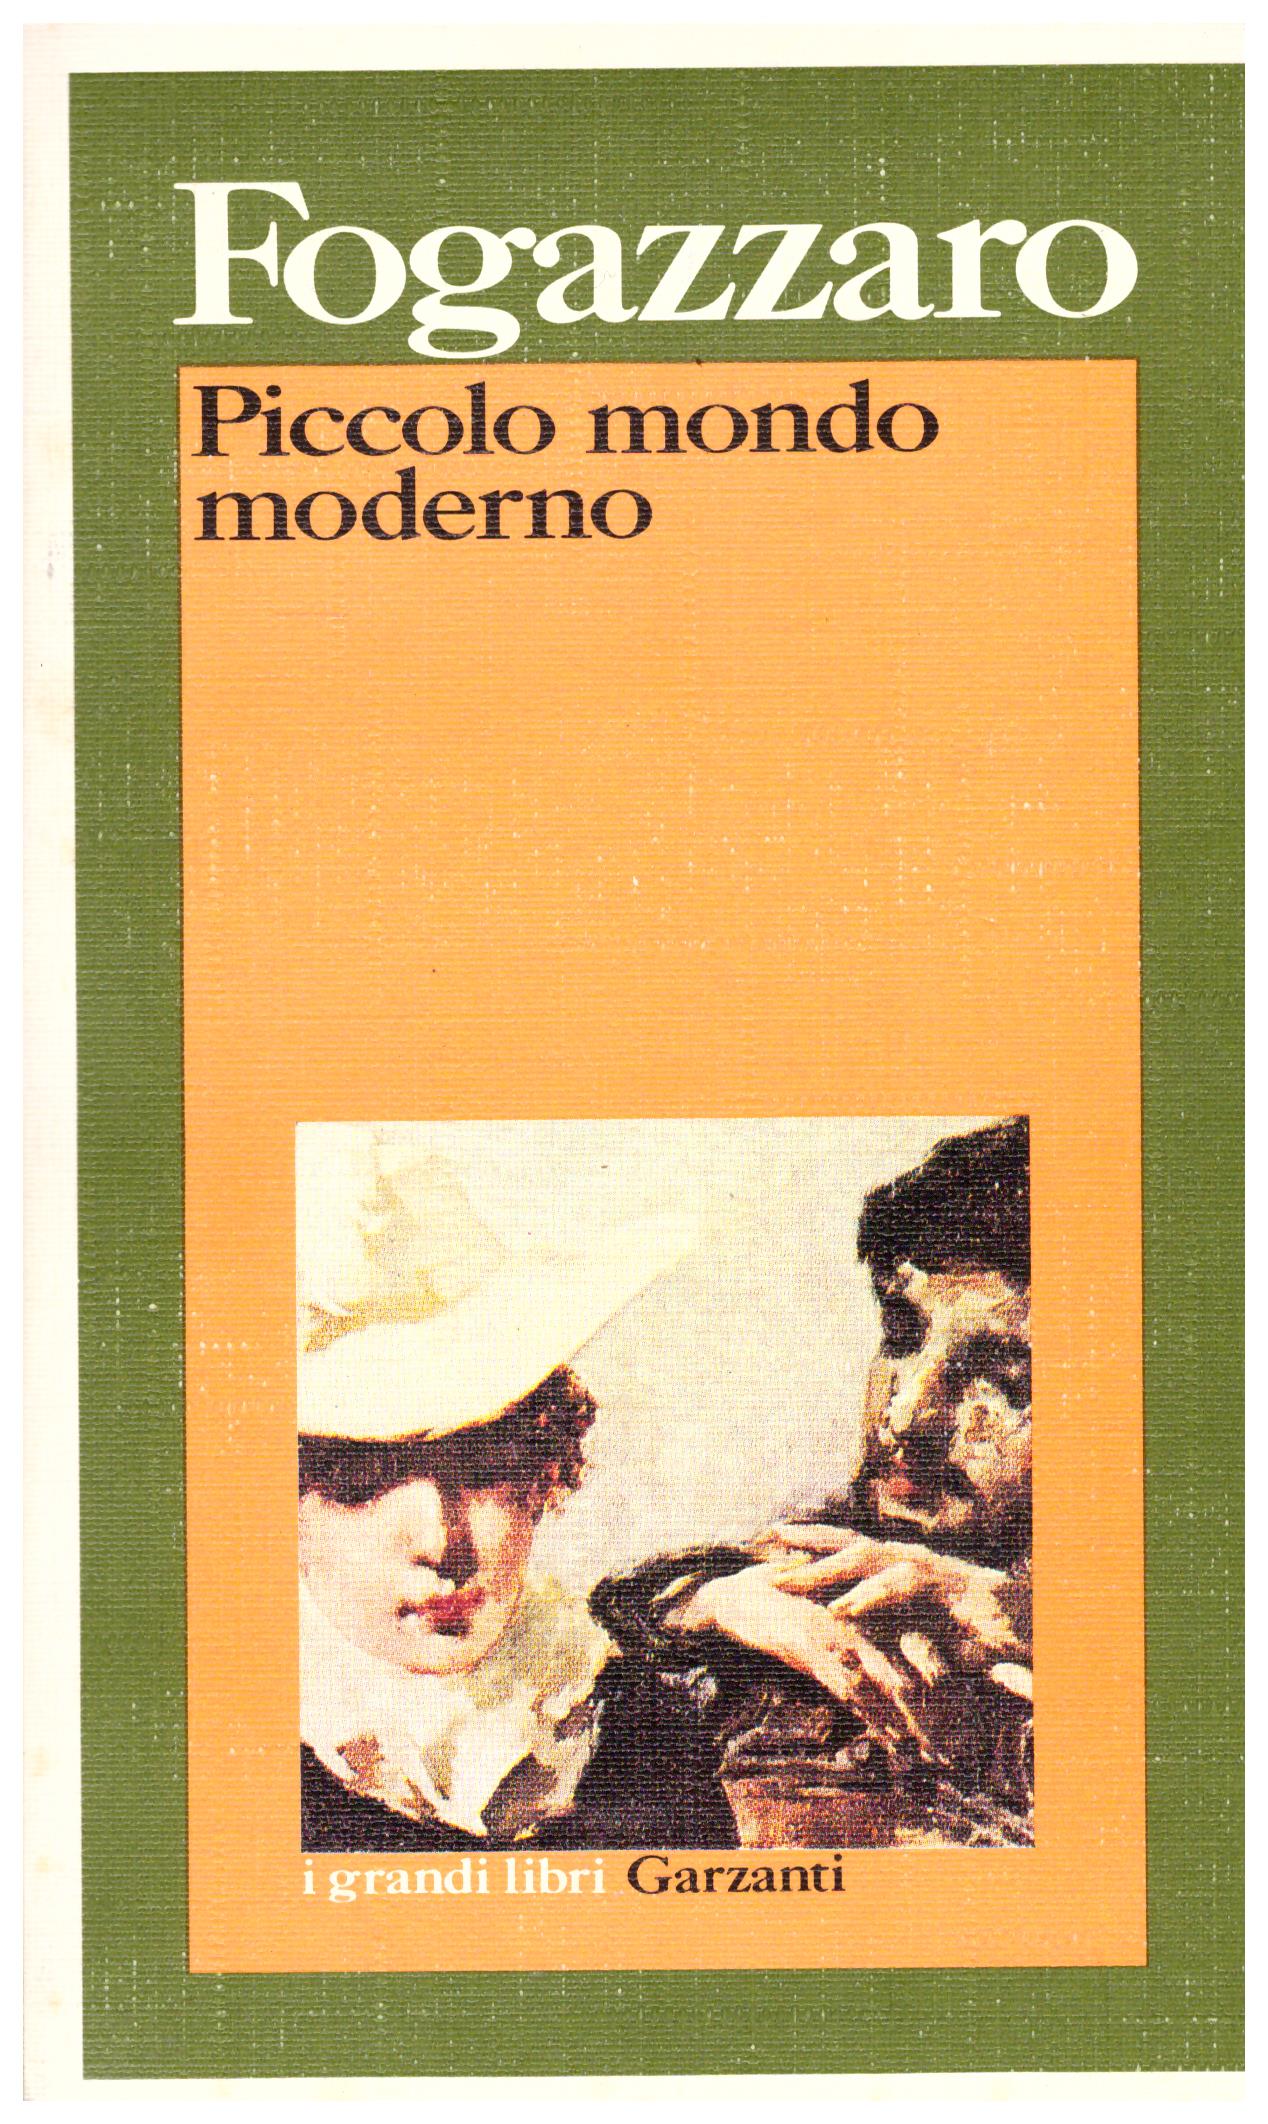 Titolo: Piccolo mondo moderno Autore: Fogazzaro  Editore: Garzanti, 1990